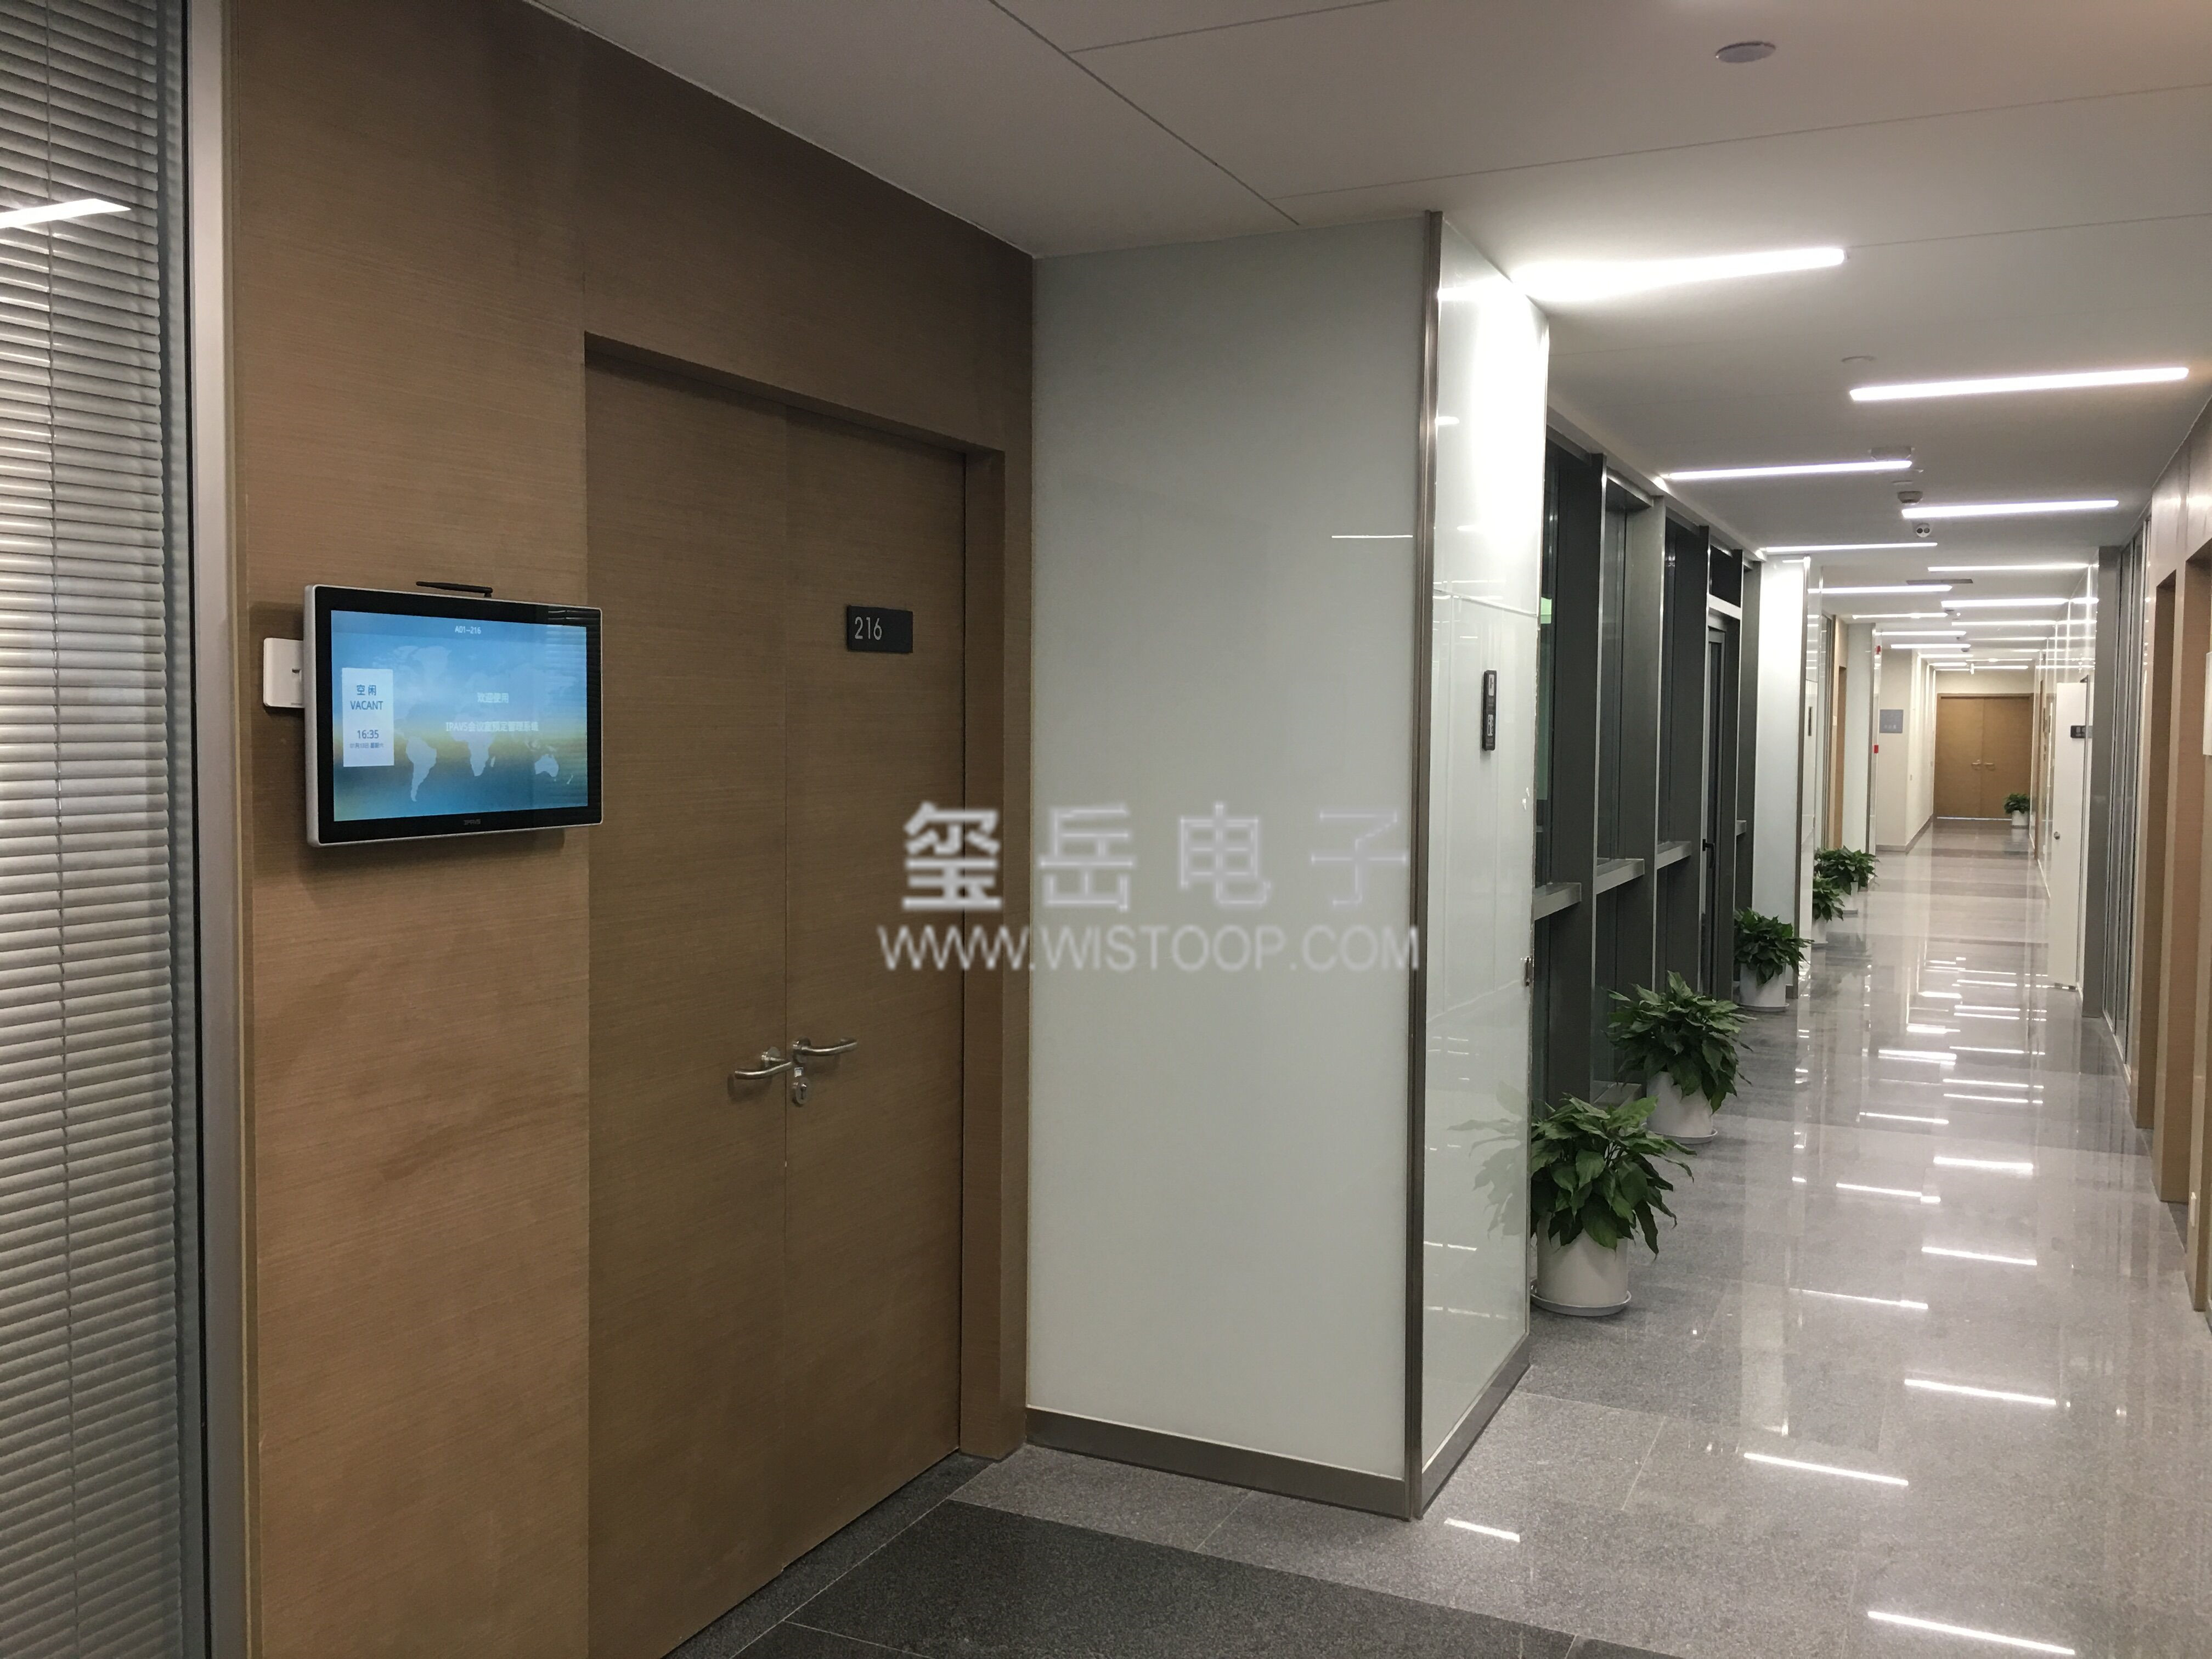 中国移动杭州研发中心会议预约与信发系统案例